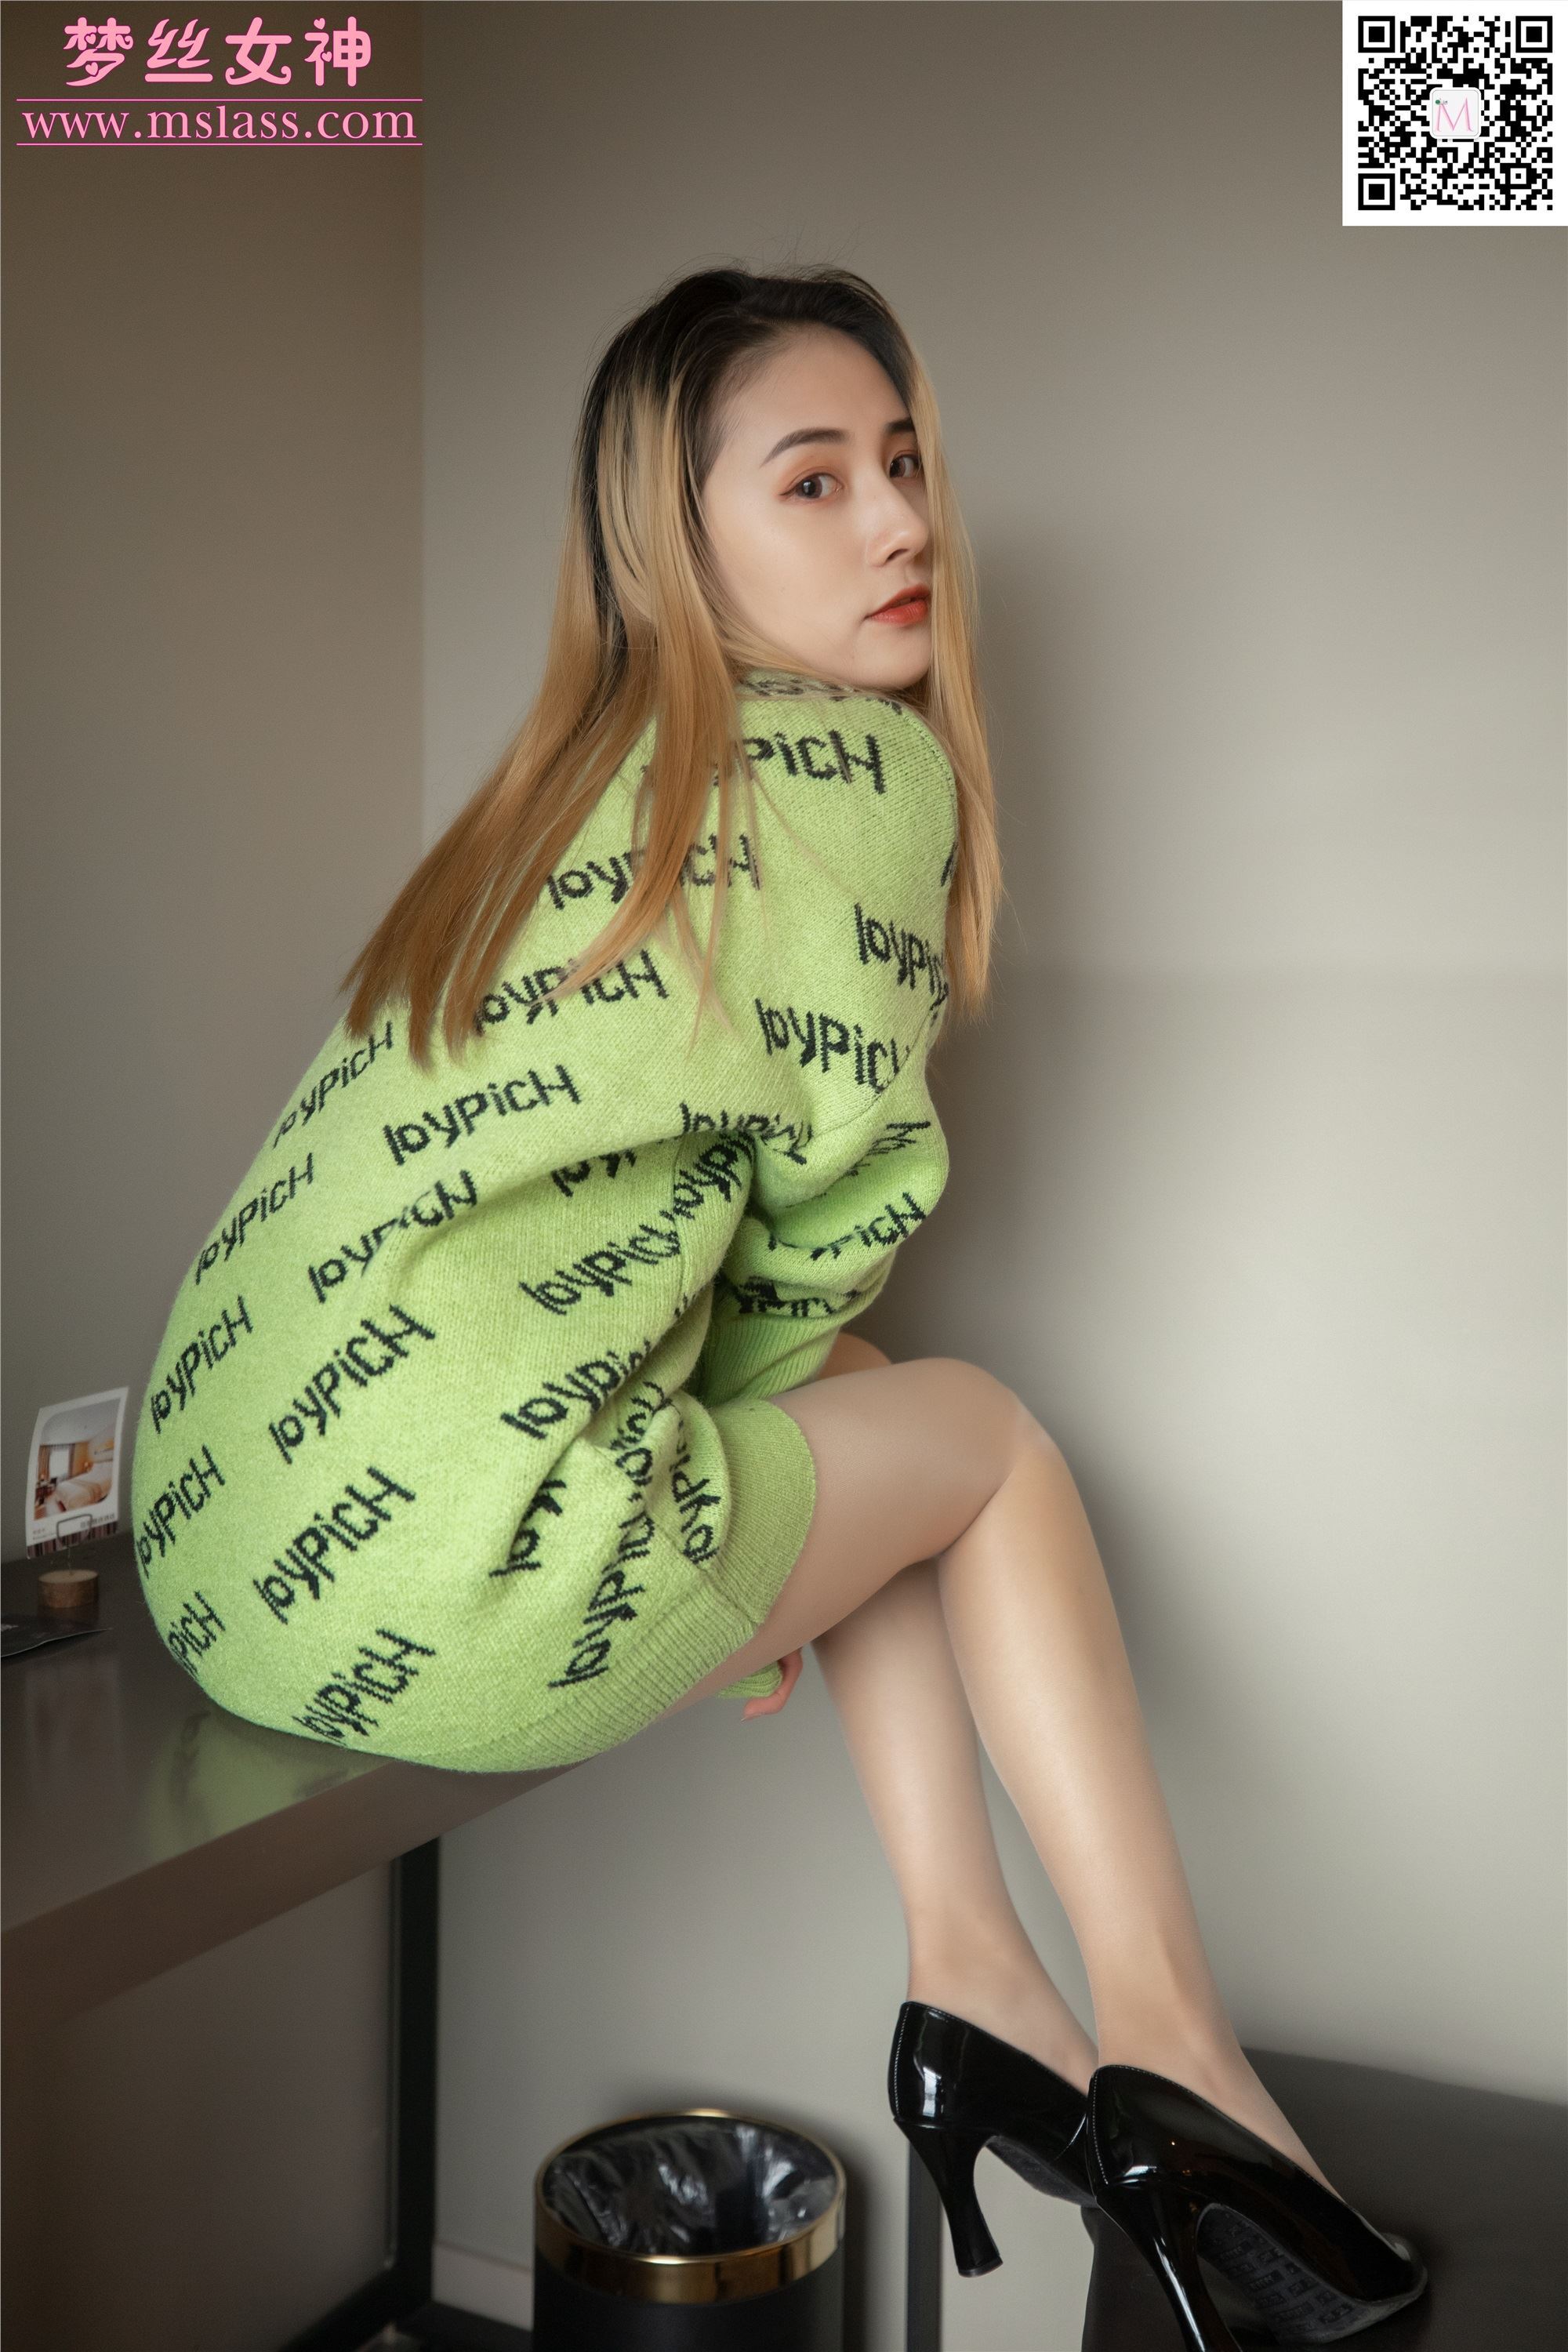 Mslass dream goddess 2019-11-27 vol.075 Xiao yun'er likes green clothes